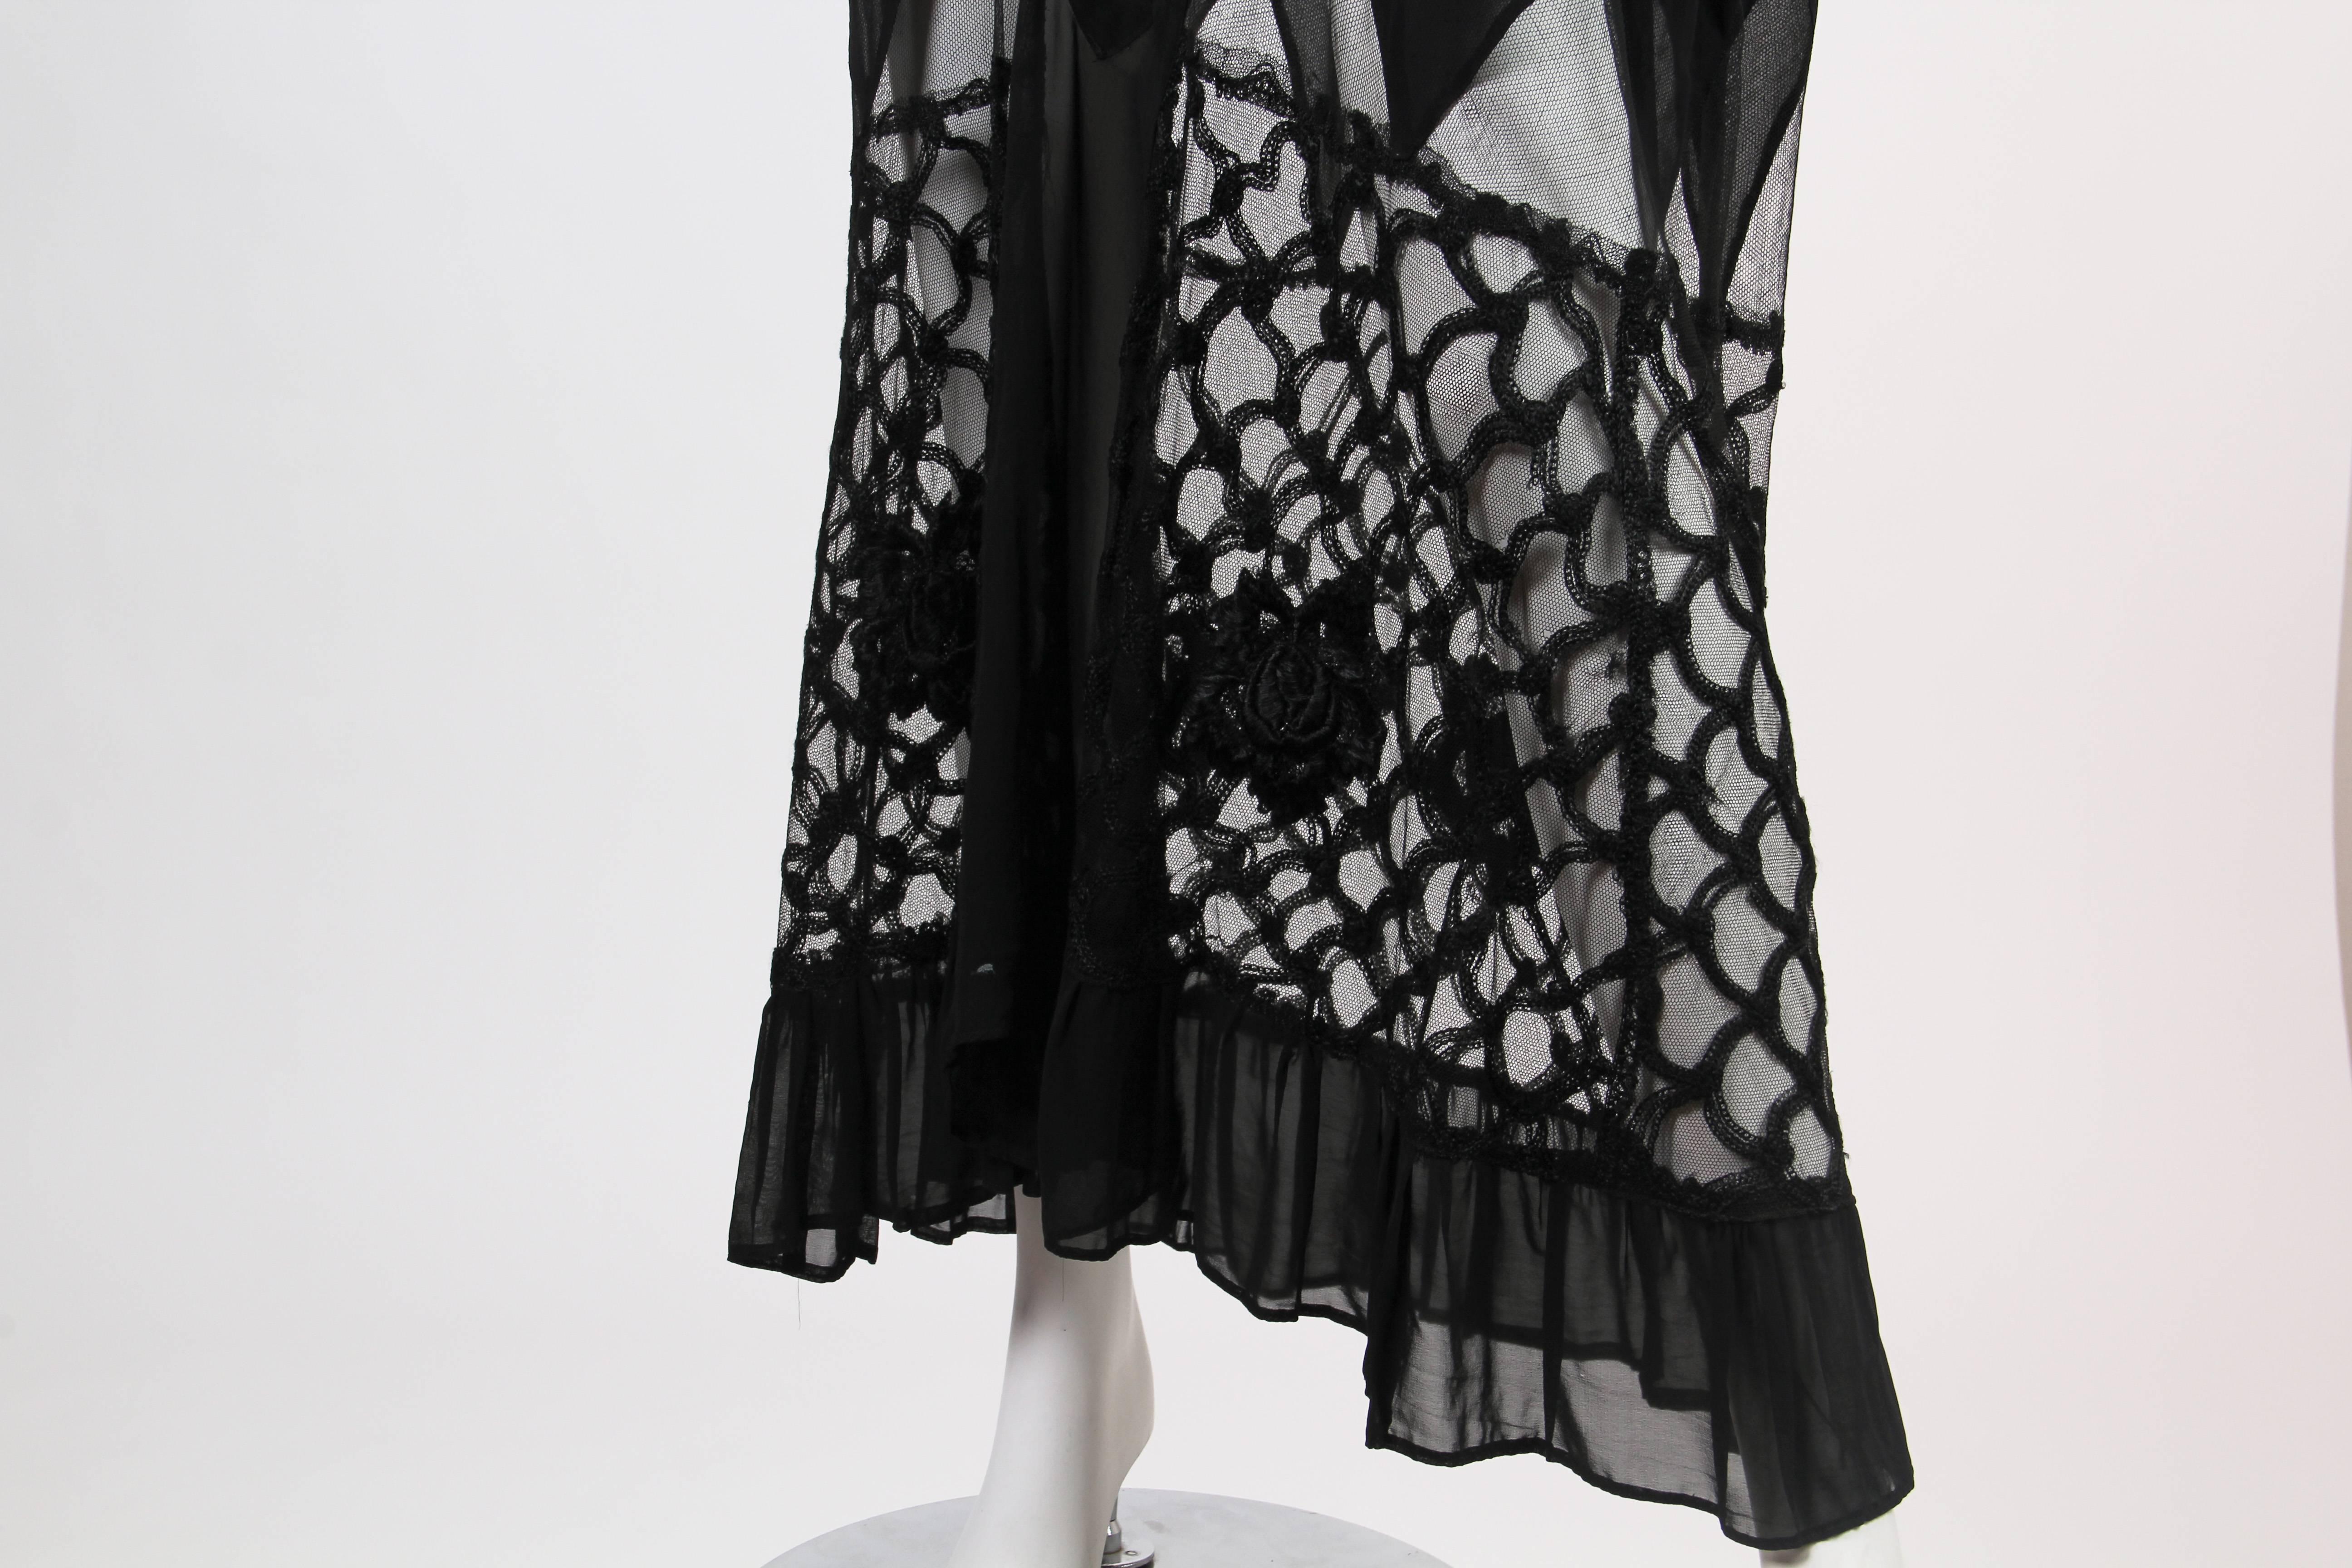 Early 1920s Chiffon and Lace Dress 3